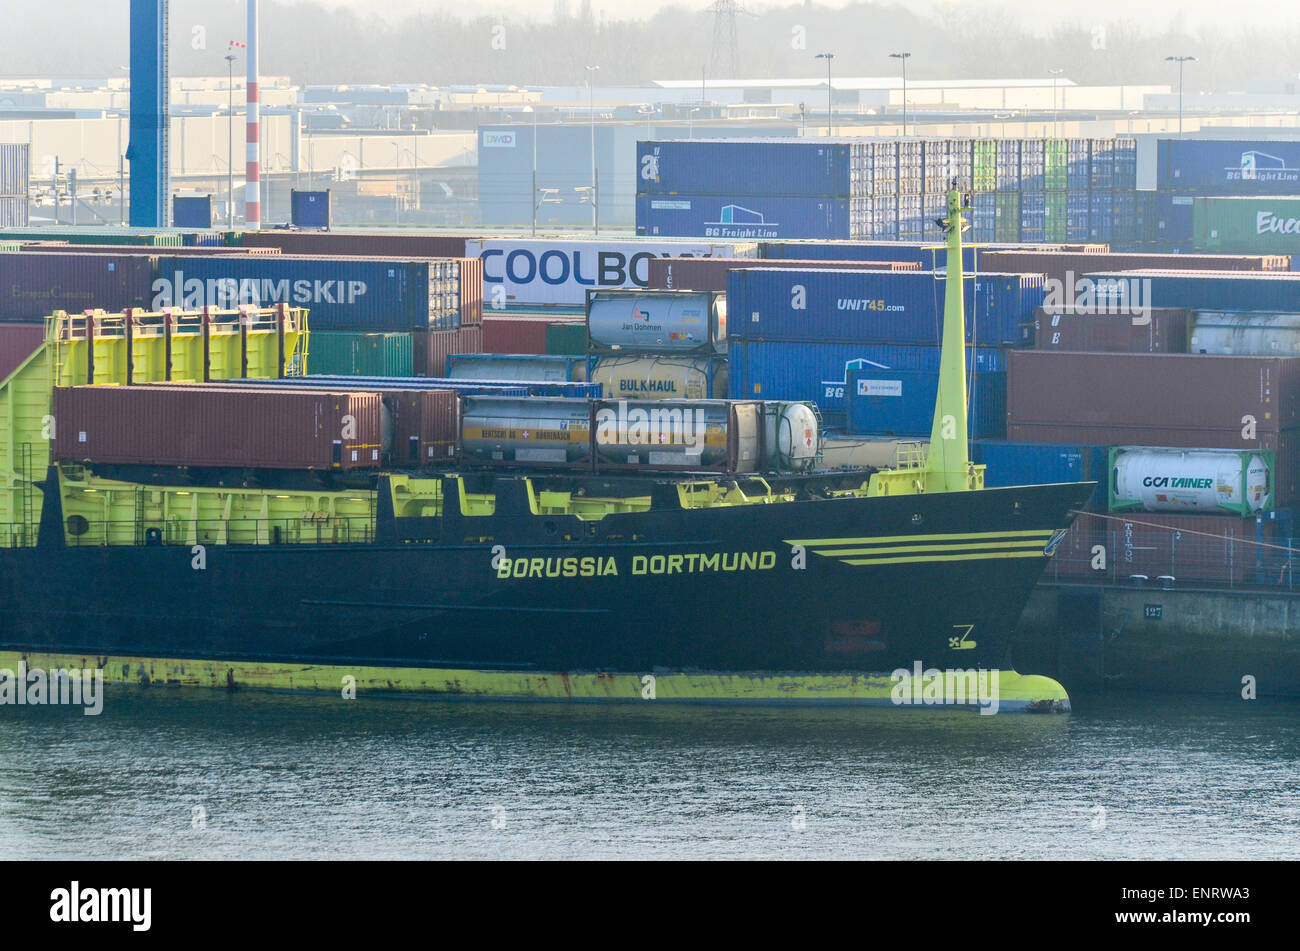 Borussia Dortmund bateau amarré au port de Rotterdam, Pays-Bas Banque D'Images